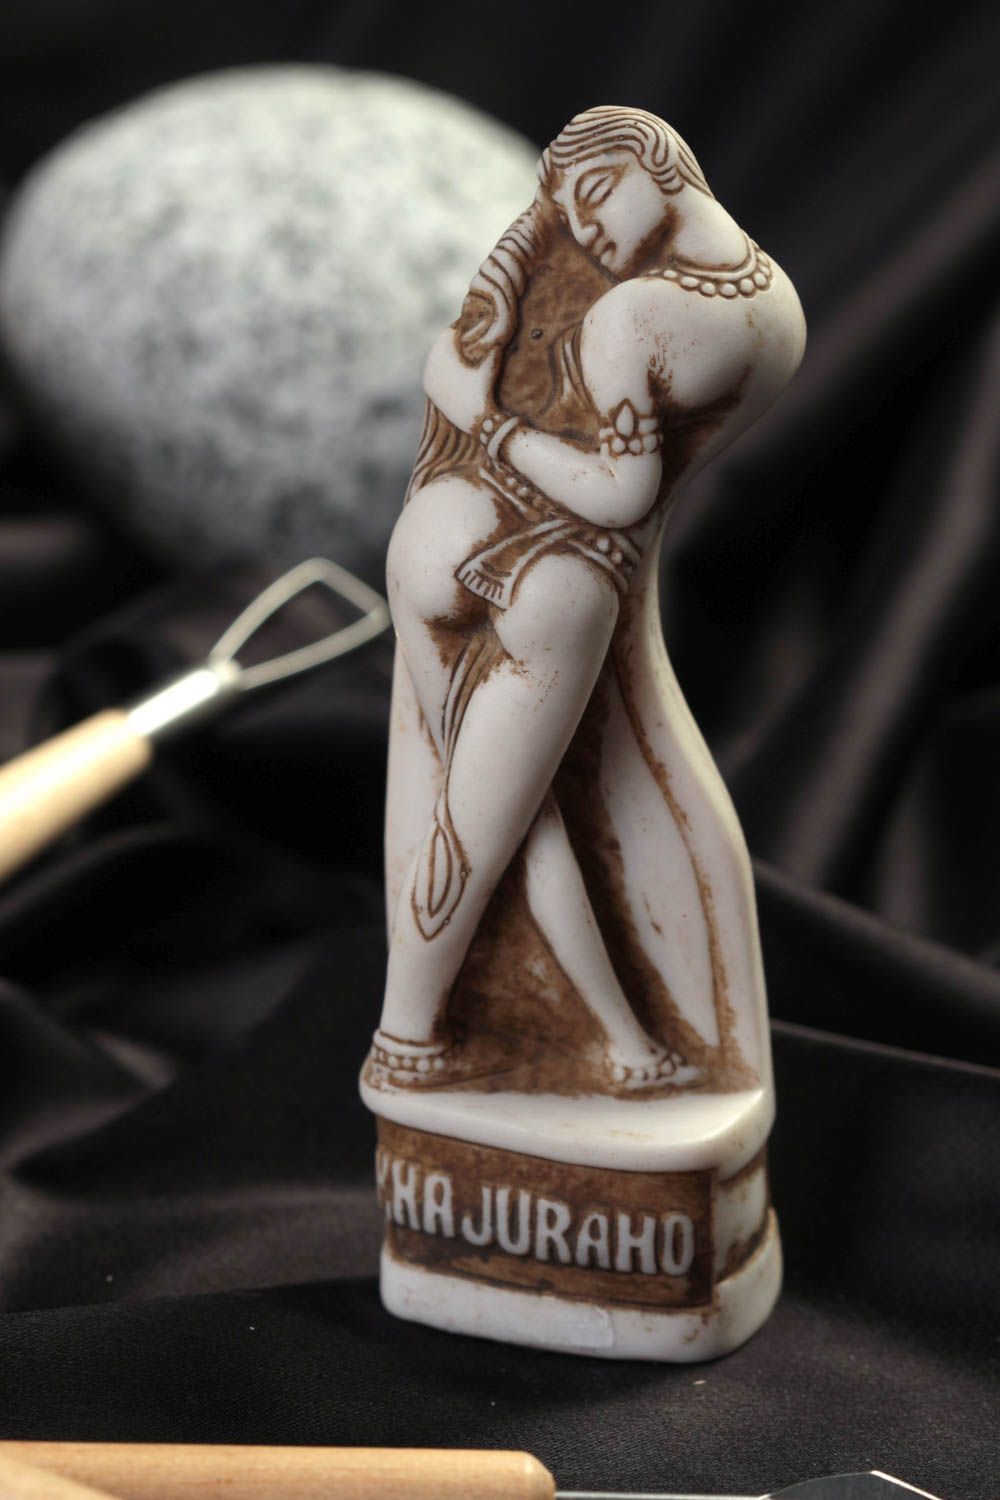 Авторская статуэтка из полимерной смолы сувенир ручной работы Каджурахо фото 1